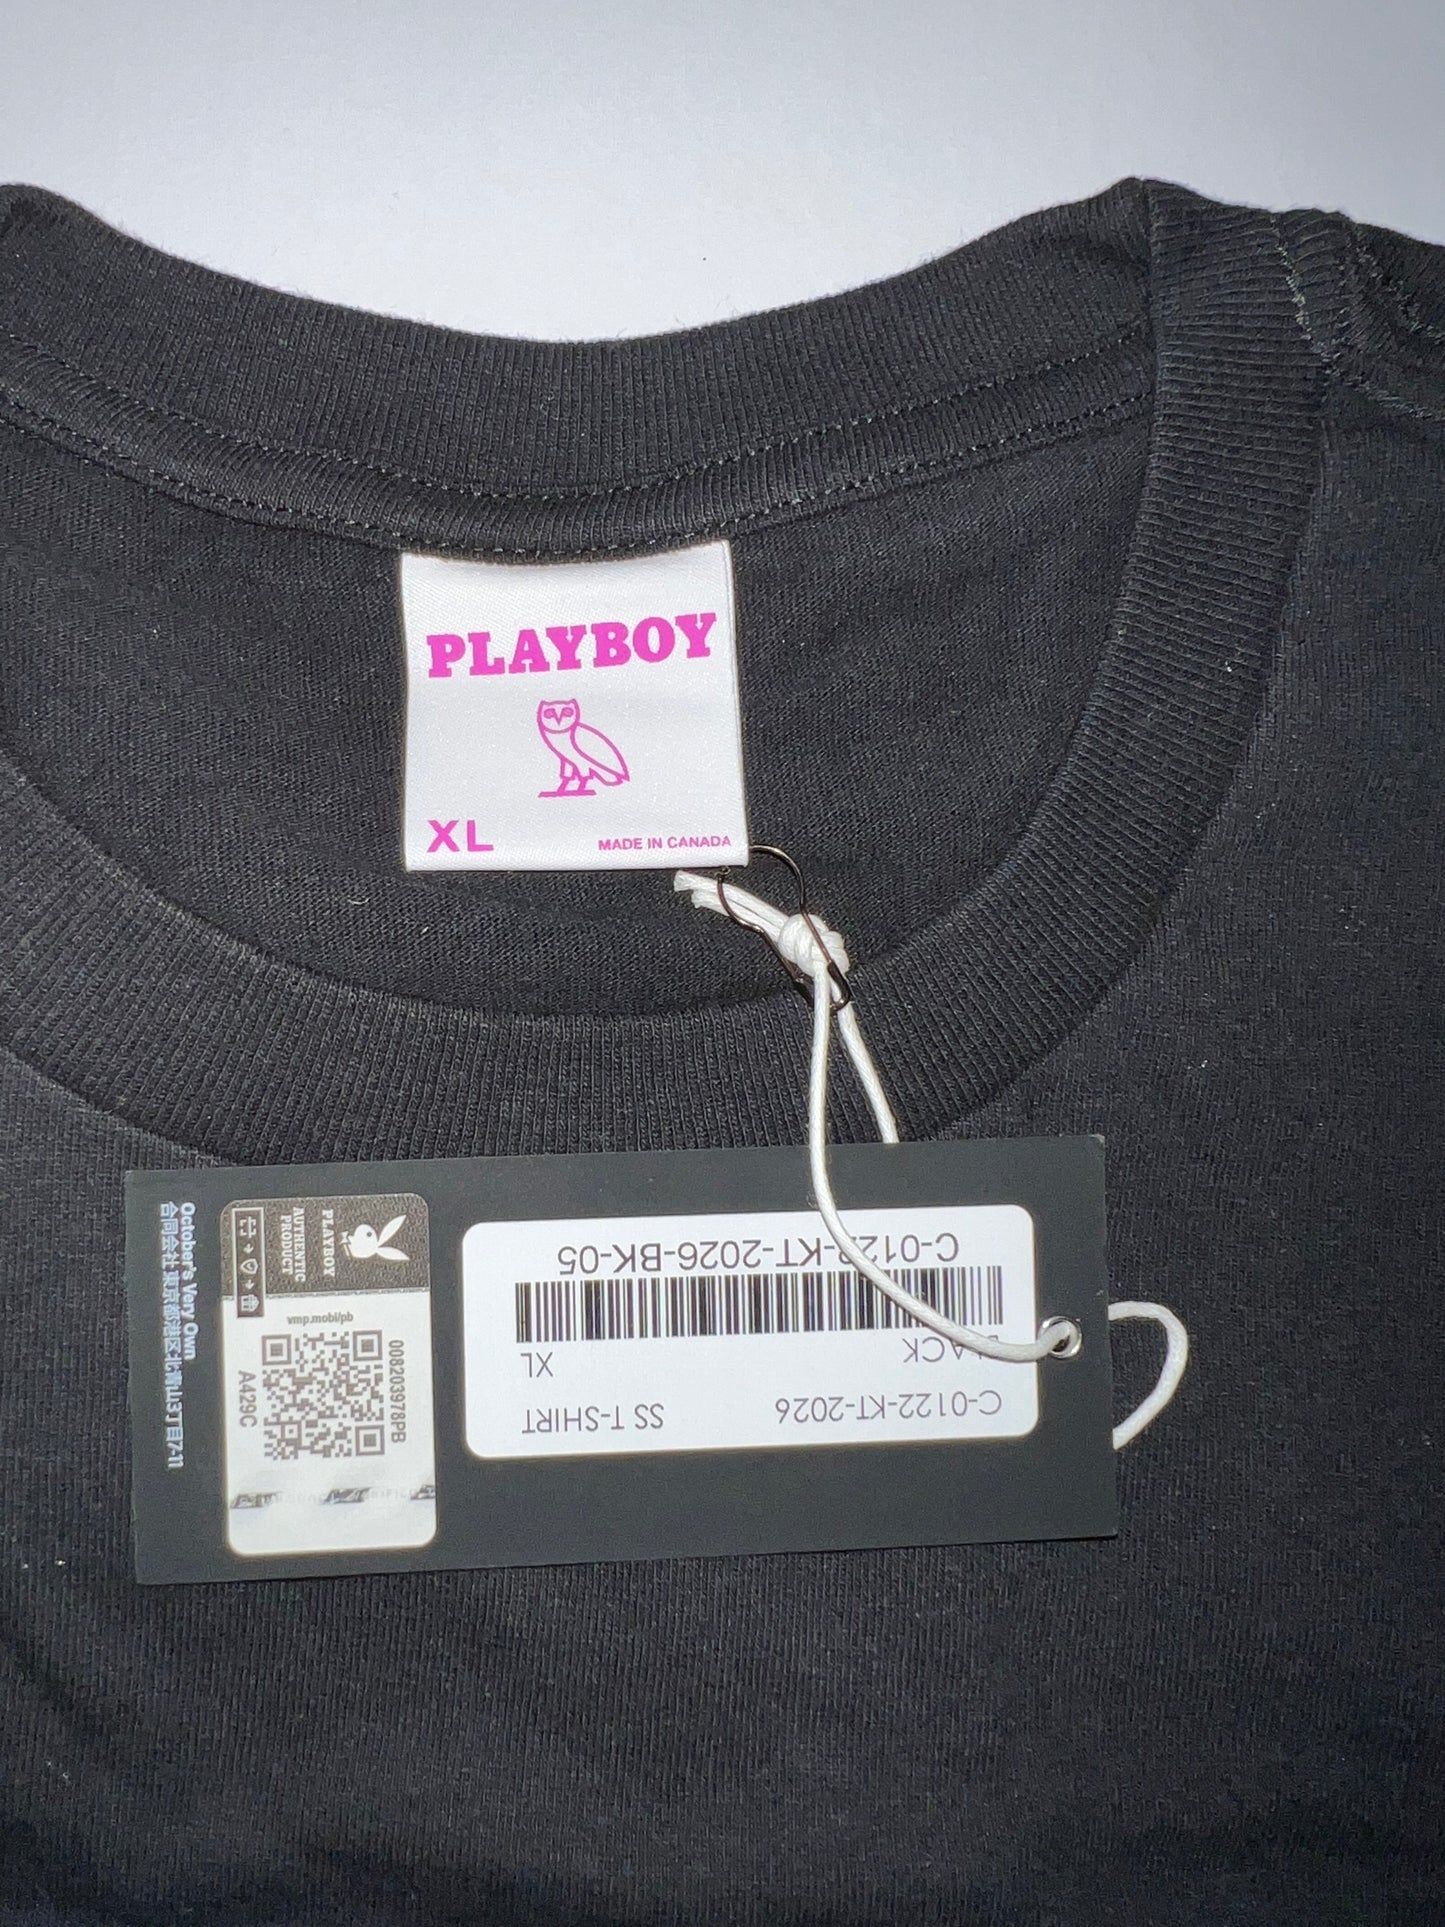 OVO x Playboy Air T-shirt